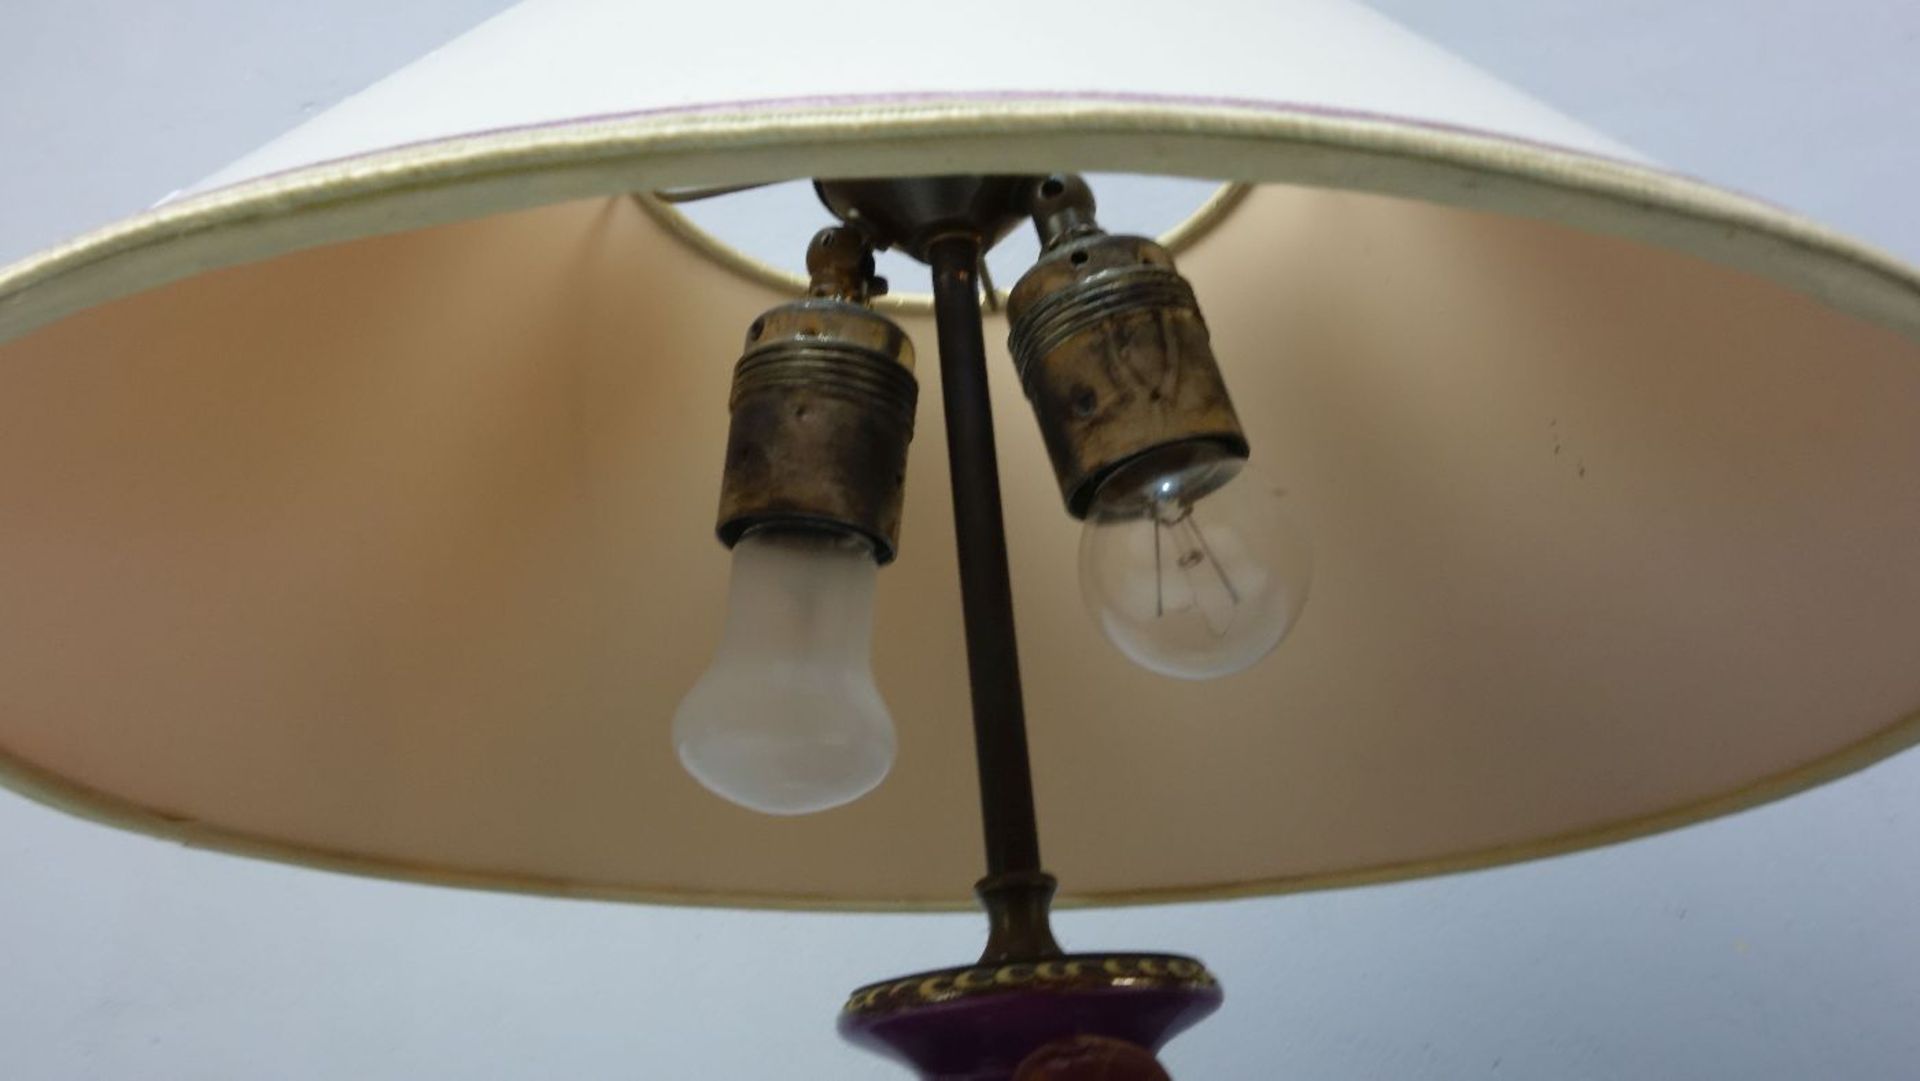 PAAR TISCH-LAMPEN / NACHTTISCH-LAMPEN/ two table lamps, Porzellan mit Metallpostament und - Image 3 of 3